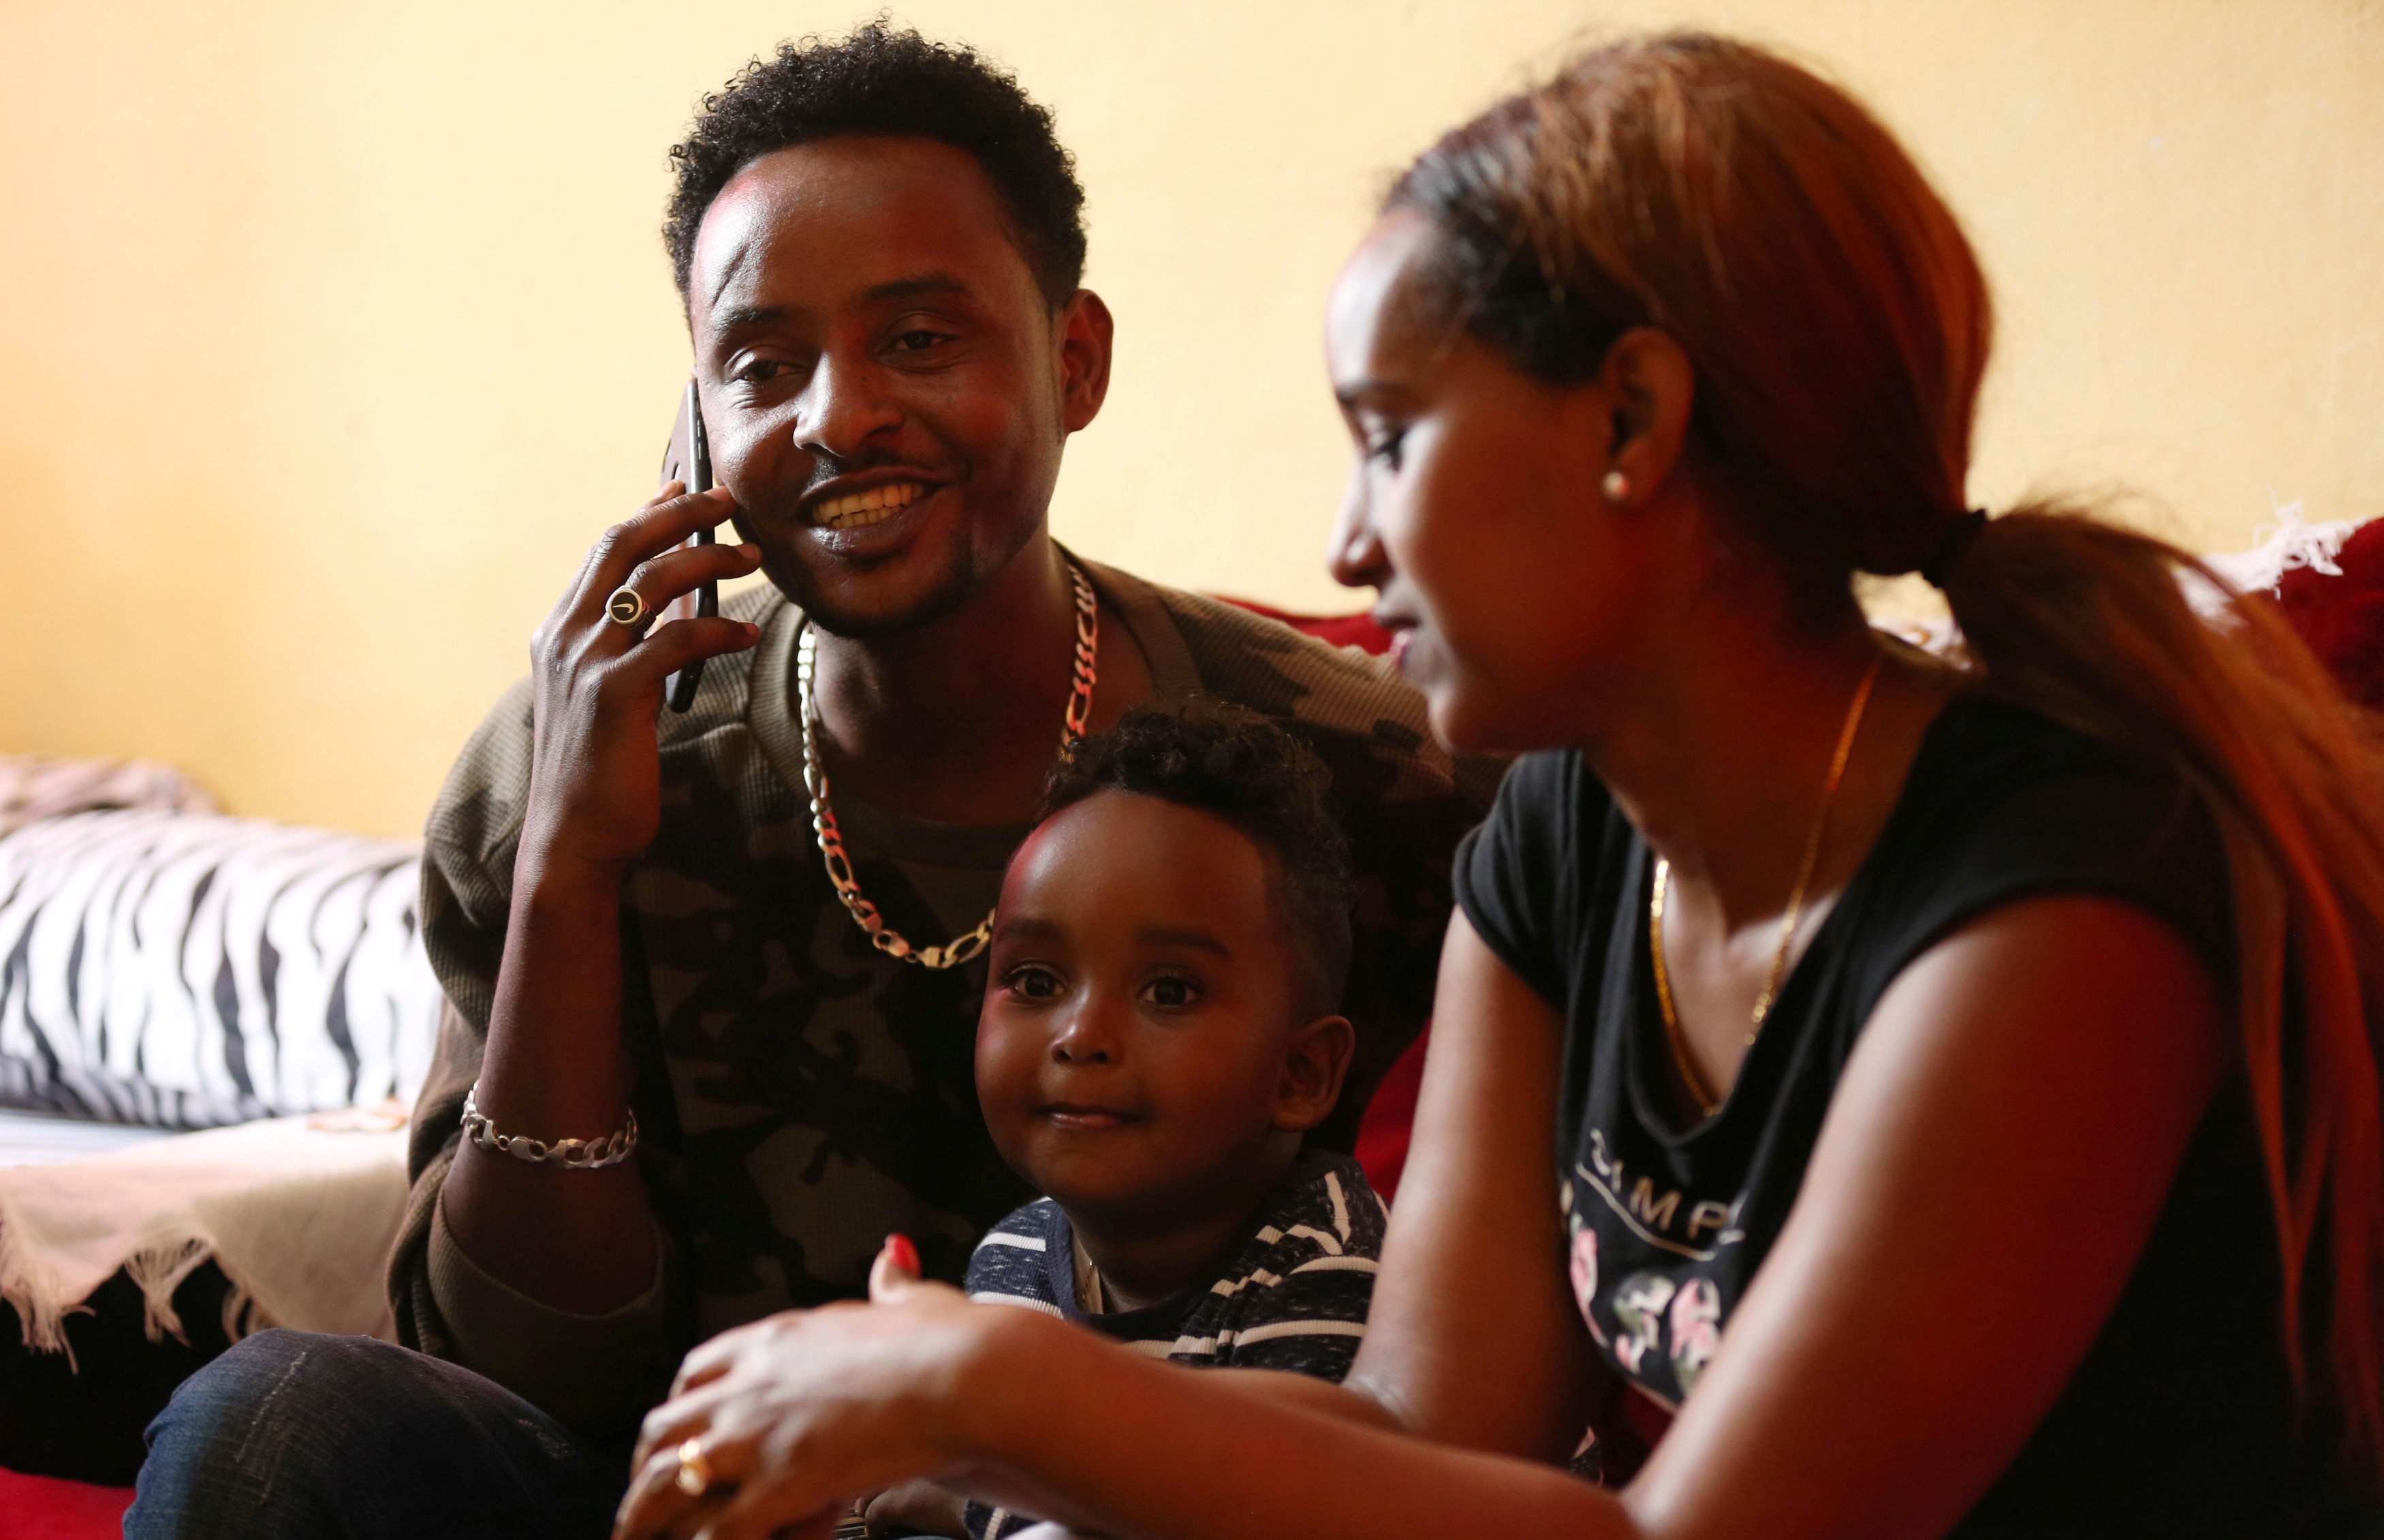 سيراك أسيغد لاجئ إريتيري في إثيوبيا يتحدث مع عائلته بعد انقطاع دام 20 عاماً. تيكسا نيجيري/ رويترز 